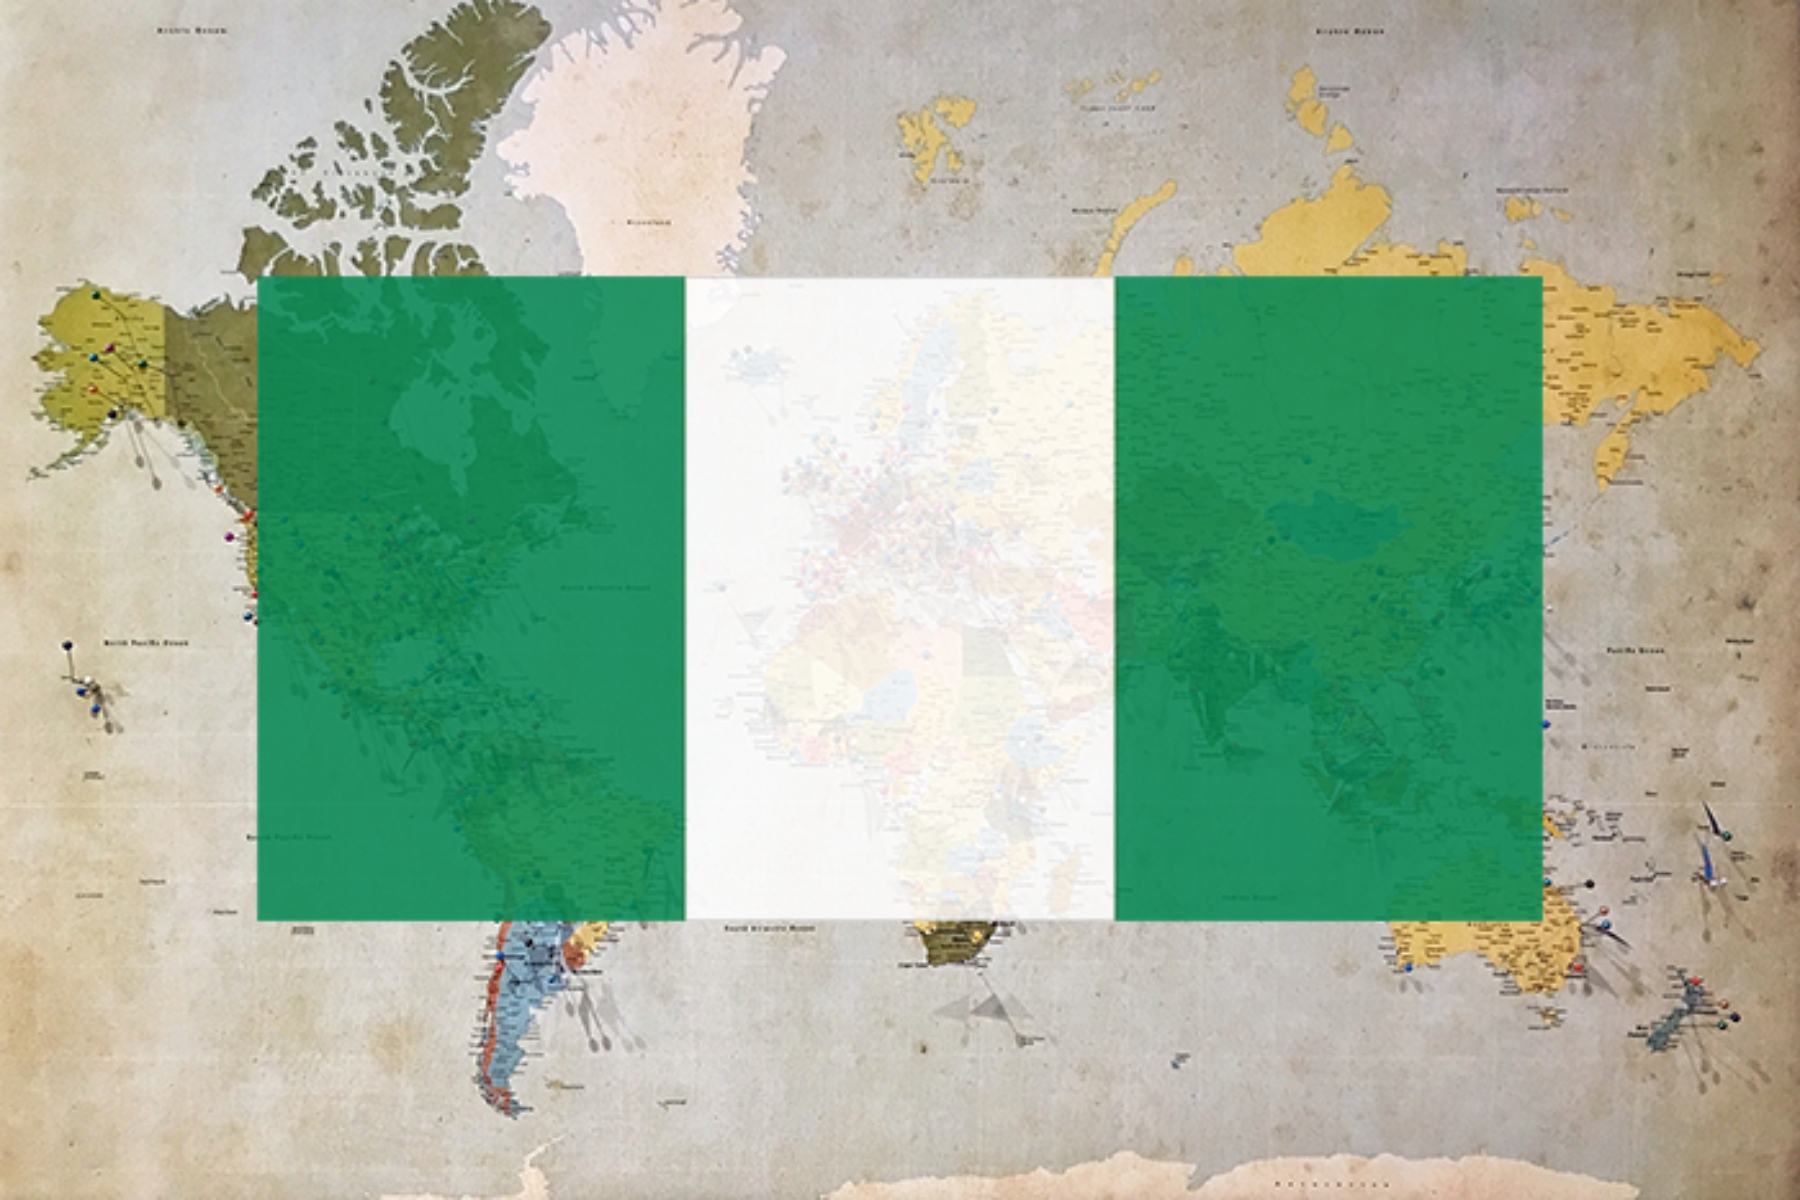 Επείγουσα ανάγκη δράσης της Νιγηρίας για την εξάλειψη των τρανς λιπαρών